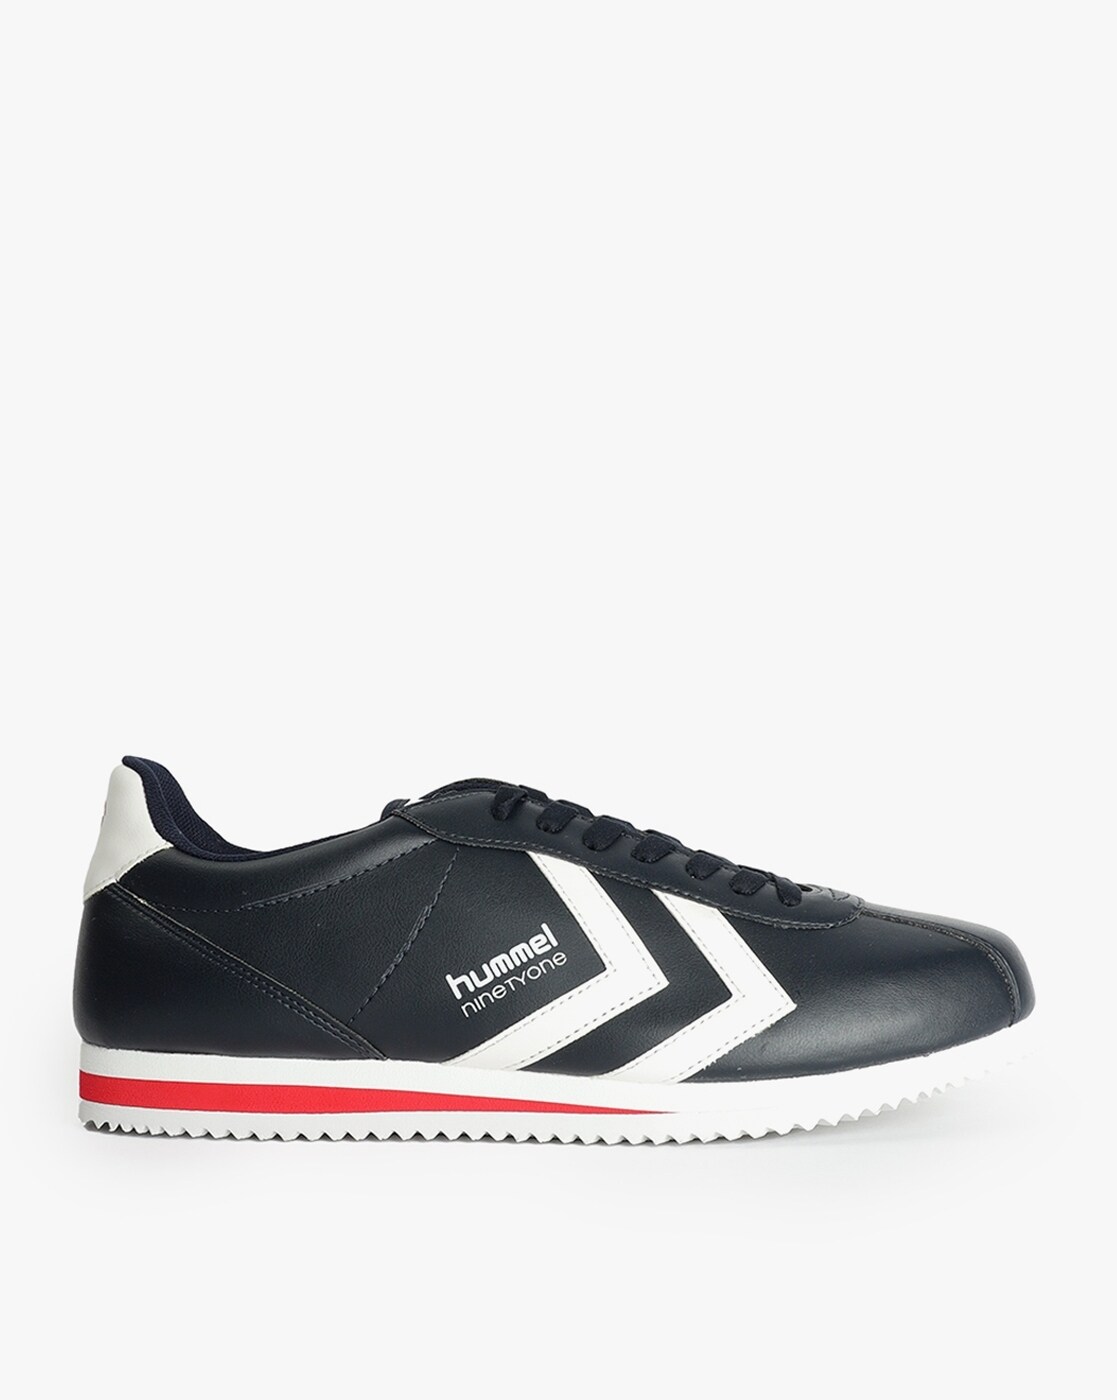 Buy Black Sneakers for Men Hummel Online | Ajio.com